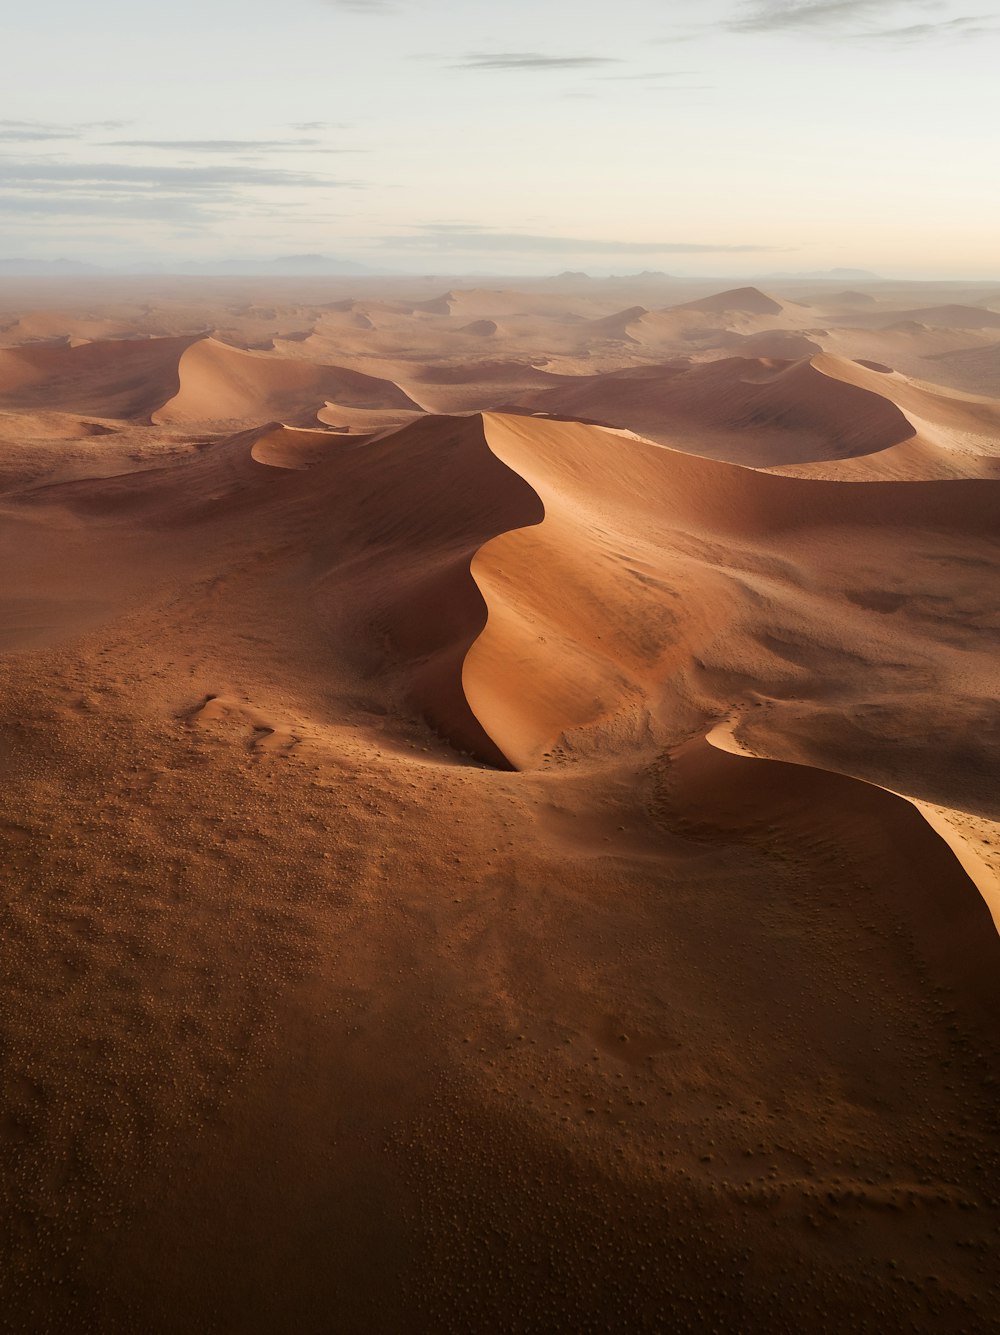 Una veduta di un deserto con dune di sabbia